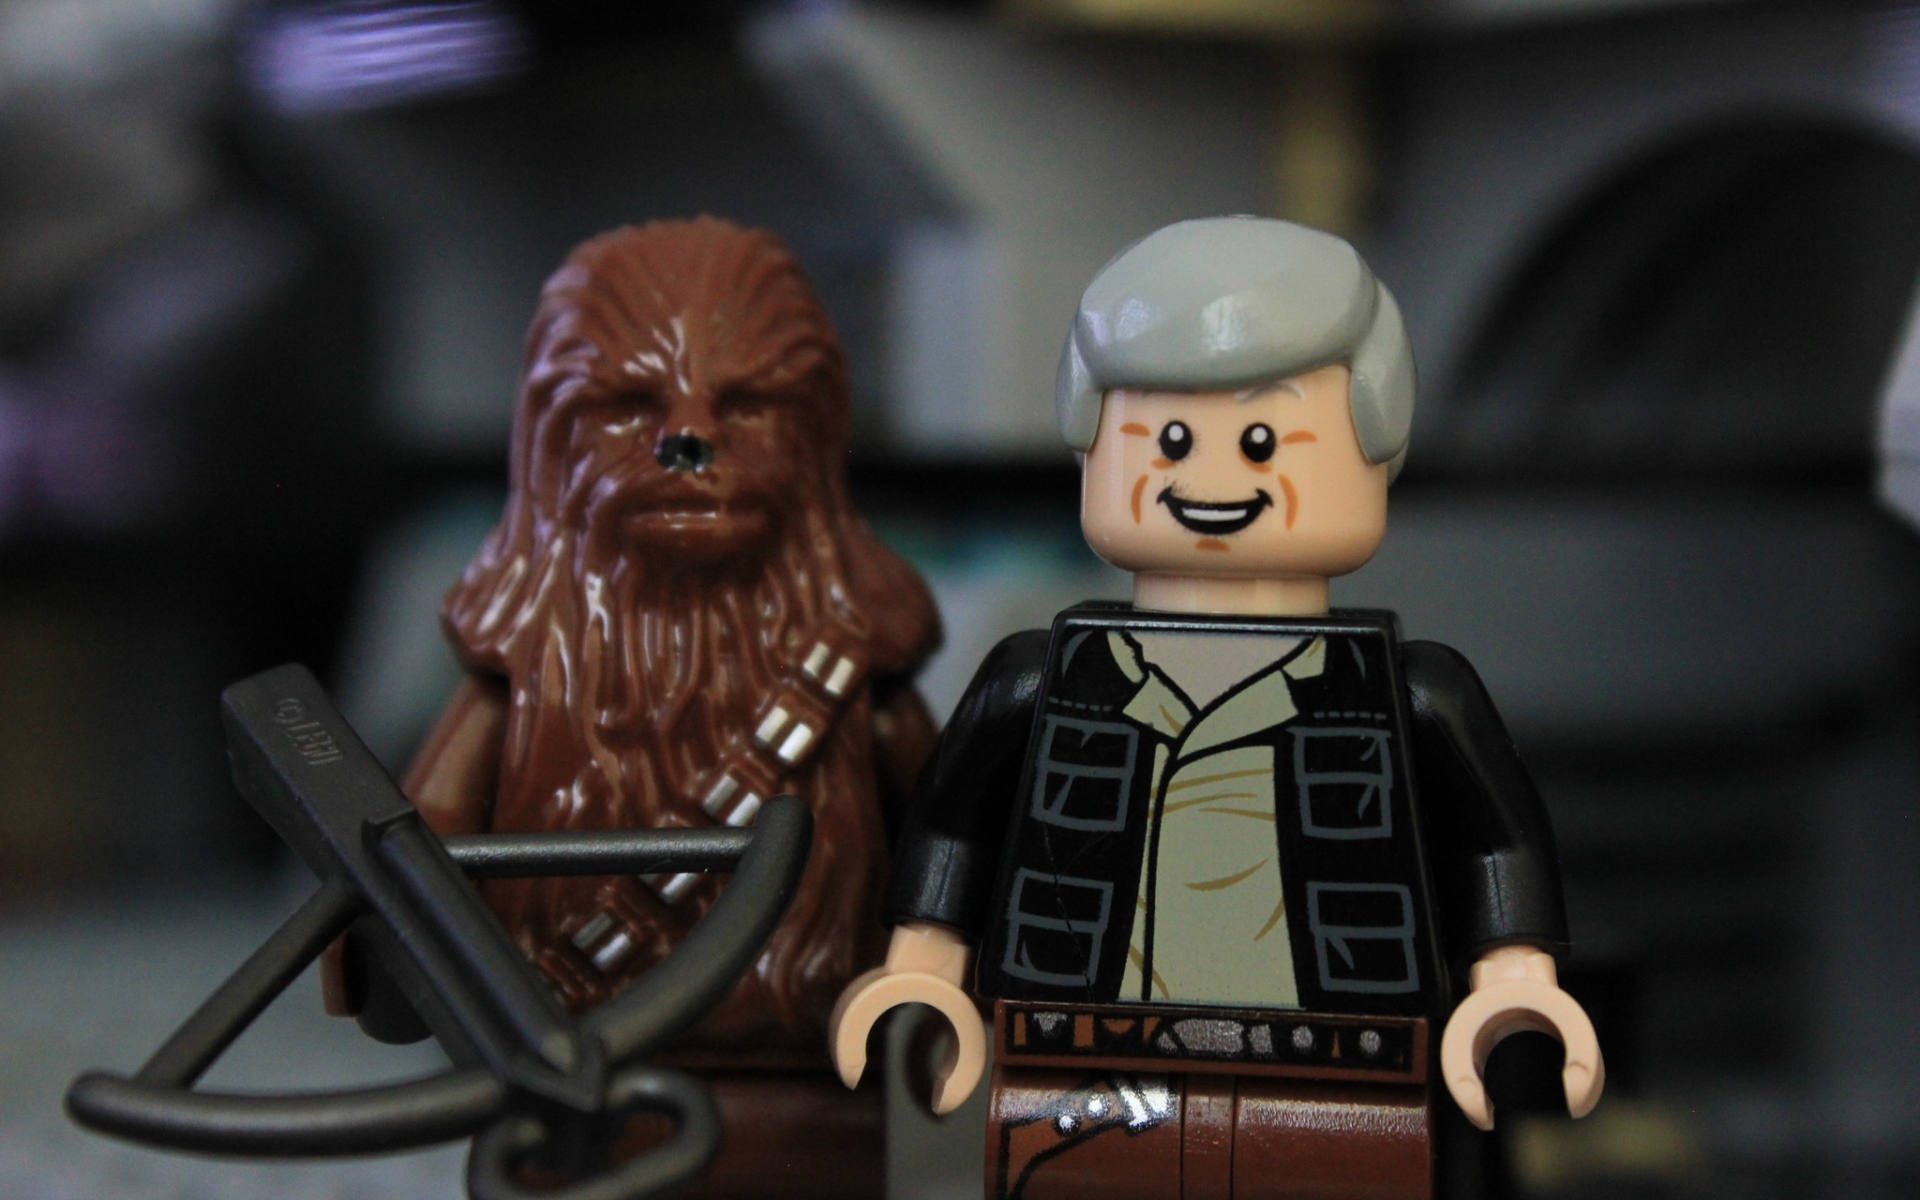 Картинки Lego звездные войны, сила пробуждается, han solo, chewbacca фото и обои на рабочий стол